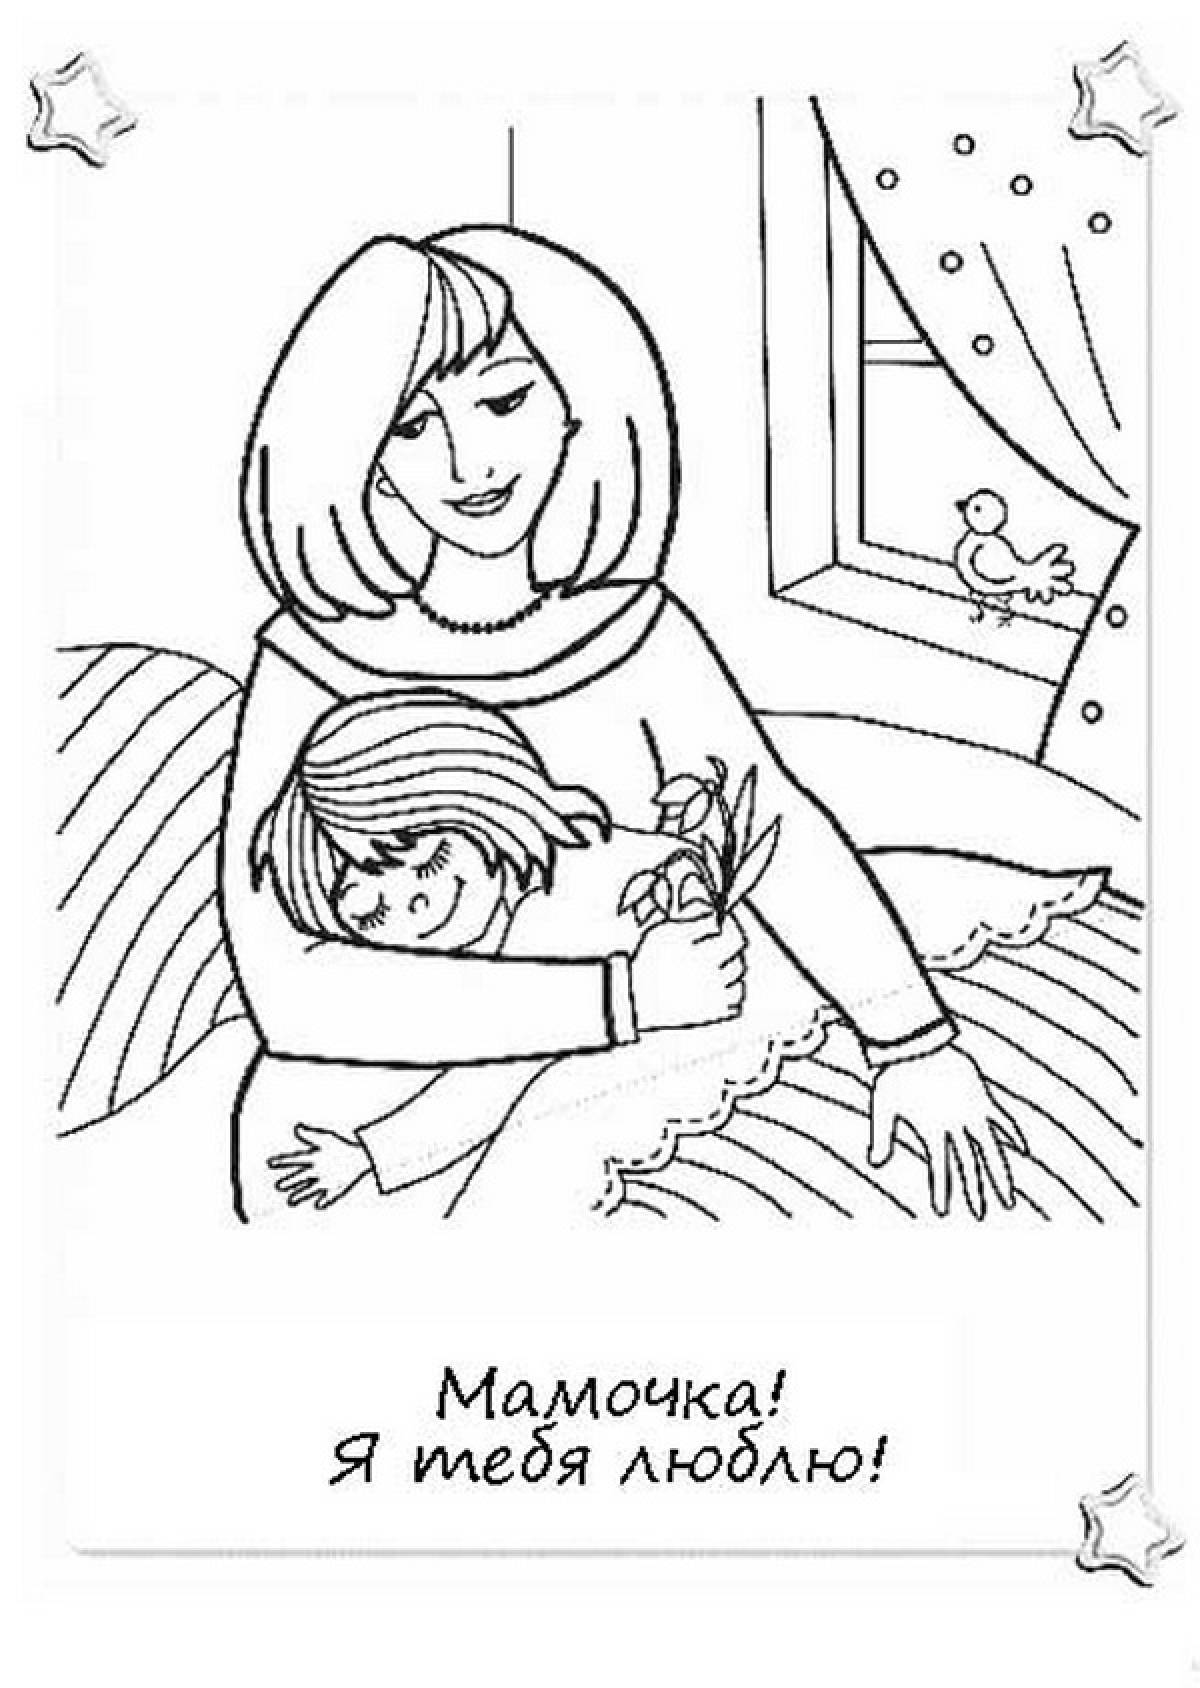 Мама с ребенком распечатать. Раскраска ко Дню матери. Рисунок для мамы раскраска. Рисунок маме на день матери. Мама раскраска для детей.